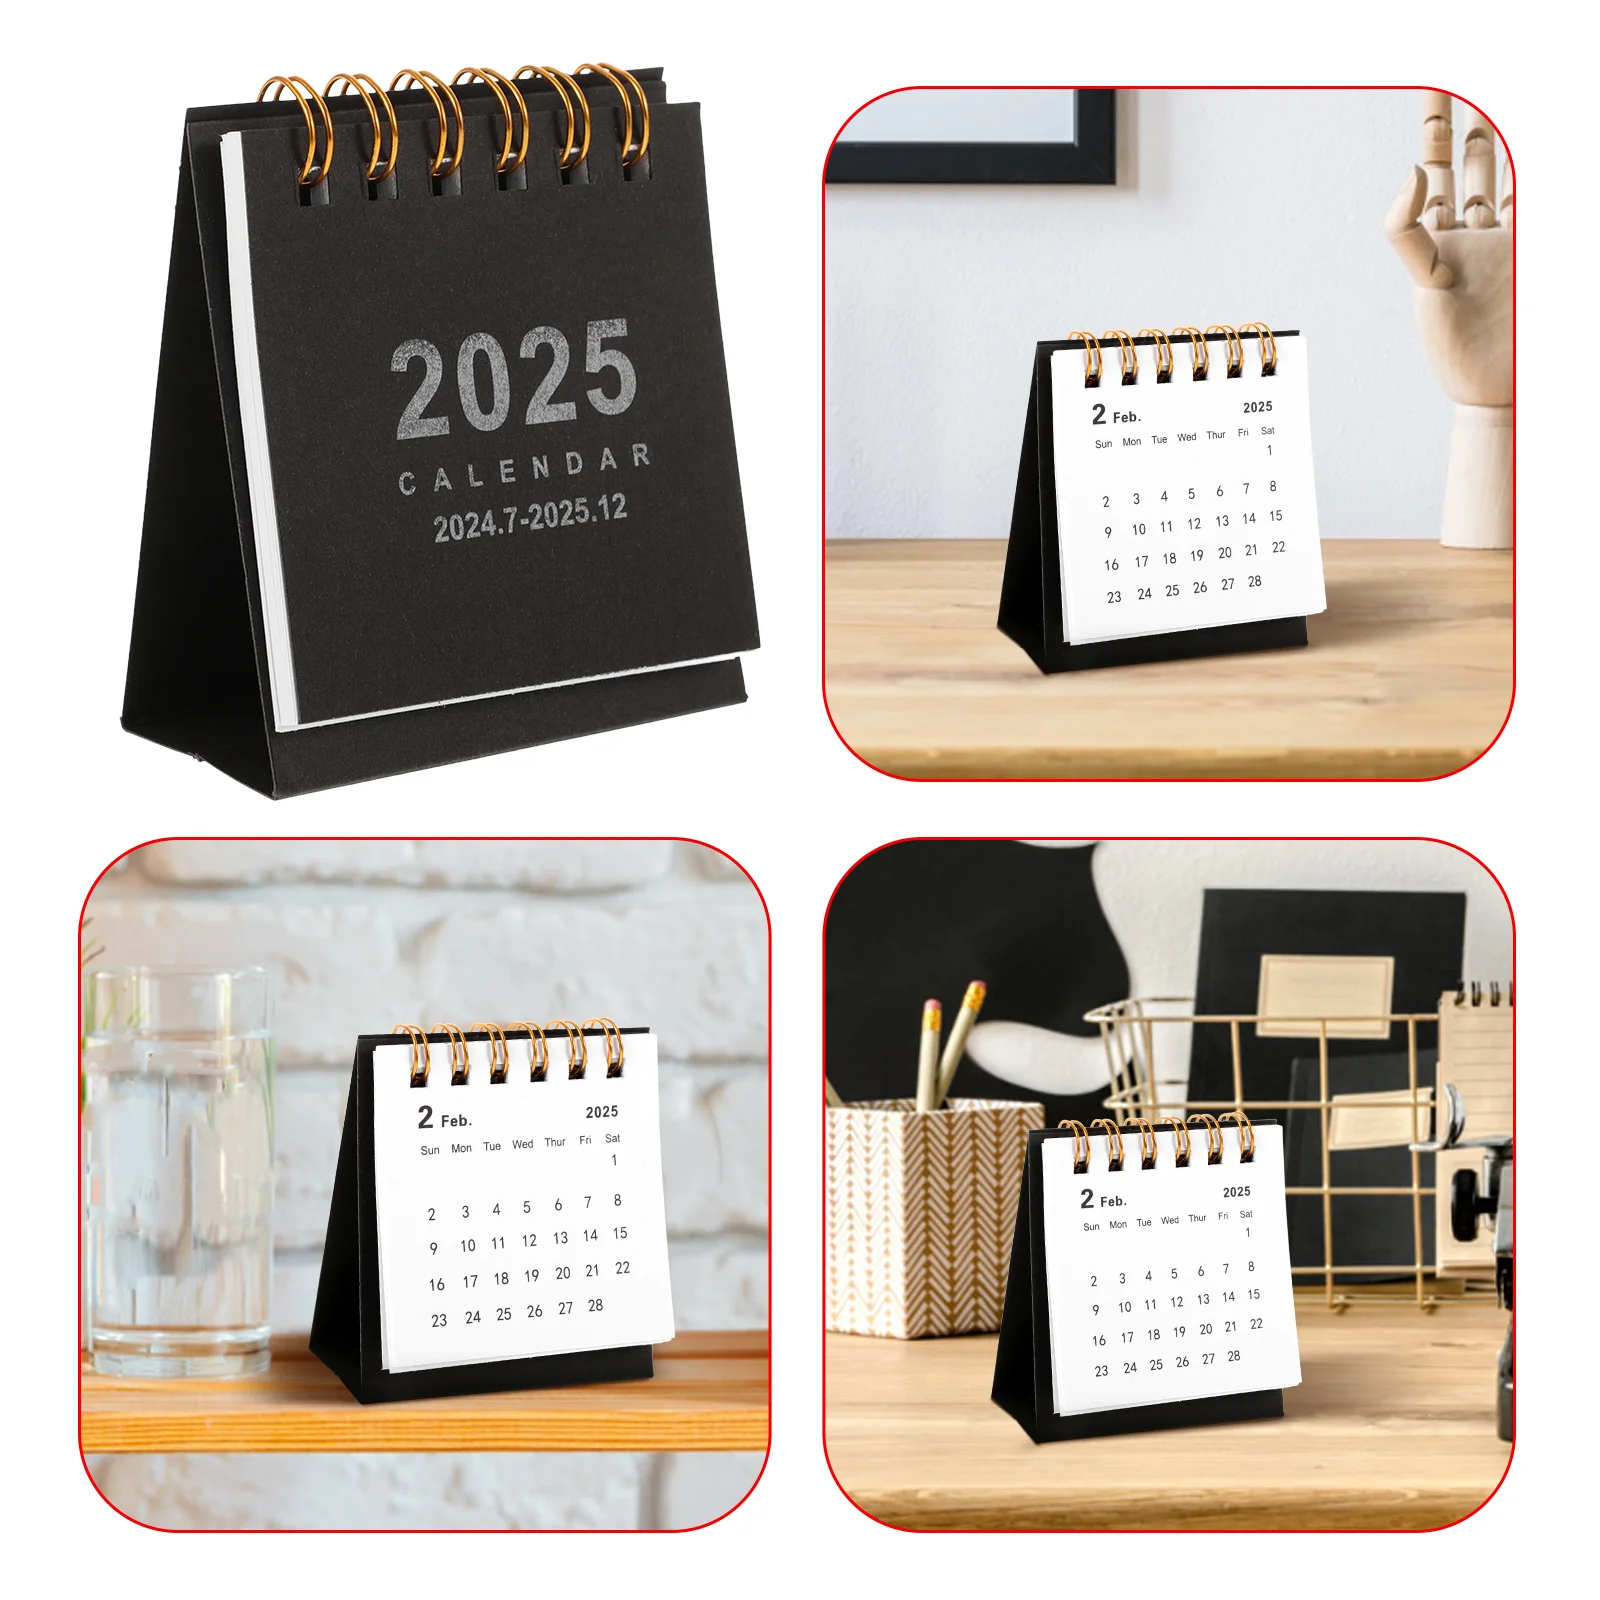 

Desk Calendar Desk 2025 Table Calendar Desktop Calendar Spiral Binding Calendar Decoration